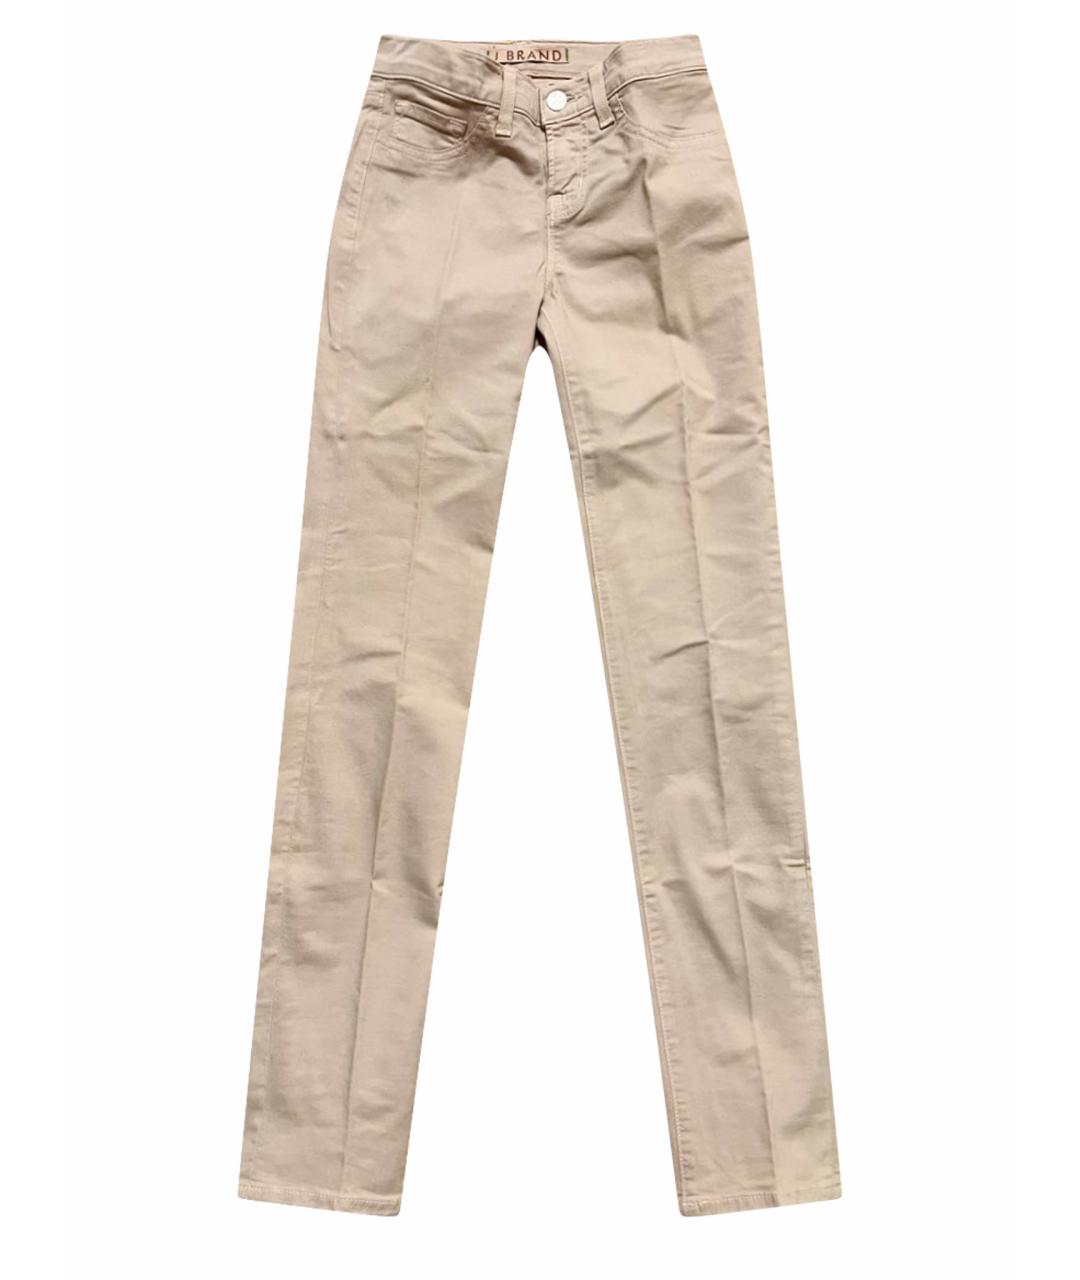 JBRAND Бежевые хлопковые джинсы слим, фото 1